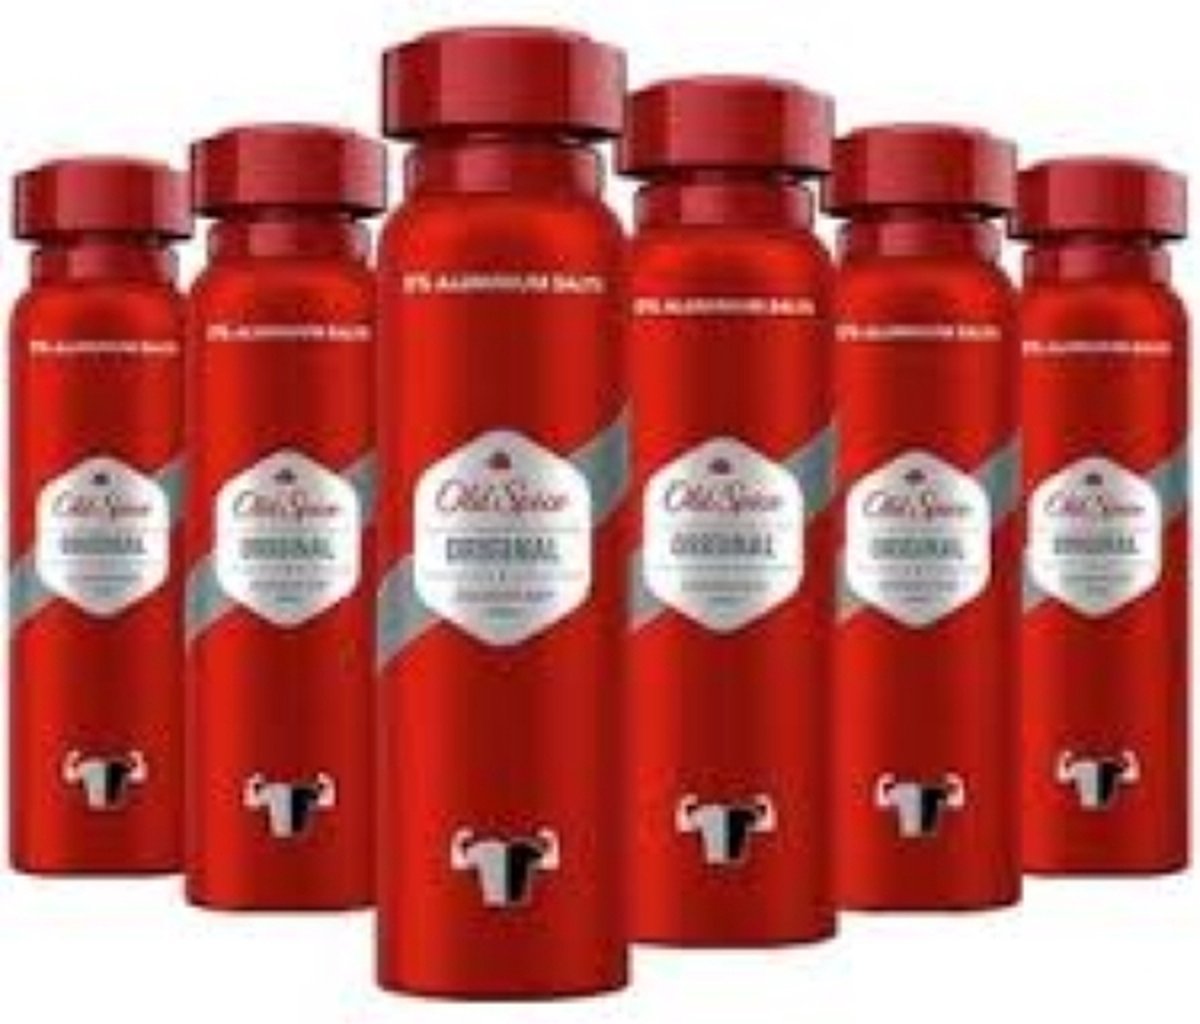 Old Spice Deodorant Body Spray - Original - Voordeelverpakking 6x150ml - Old Spice